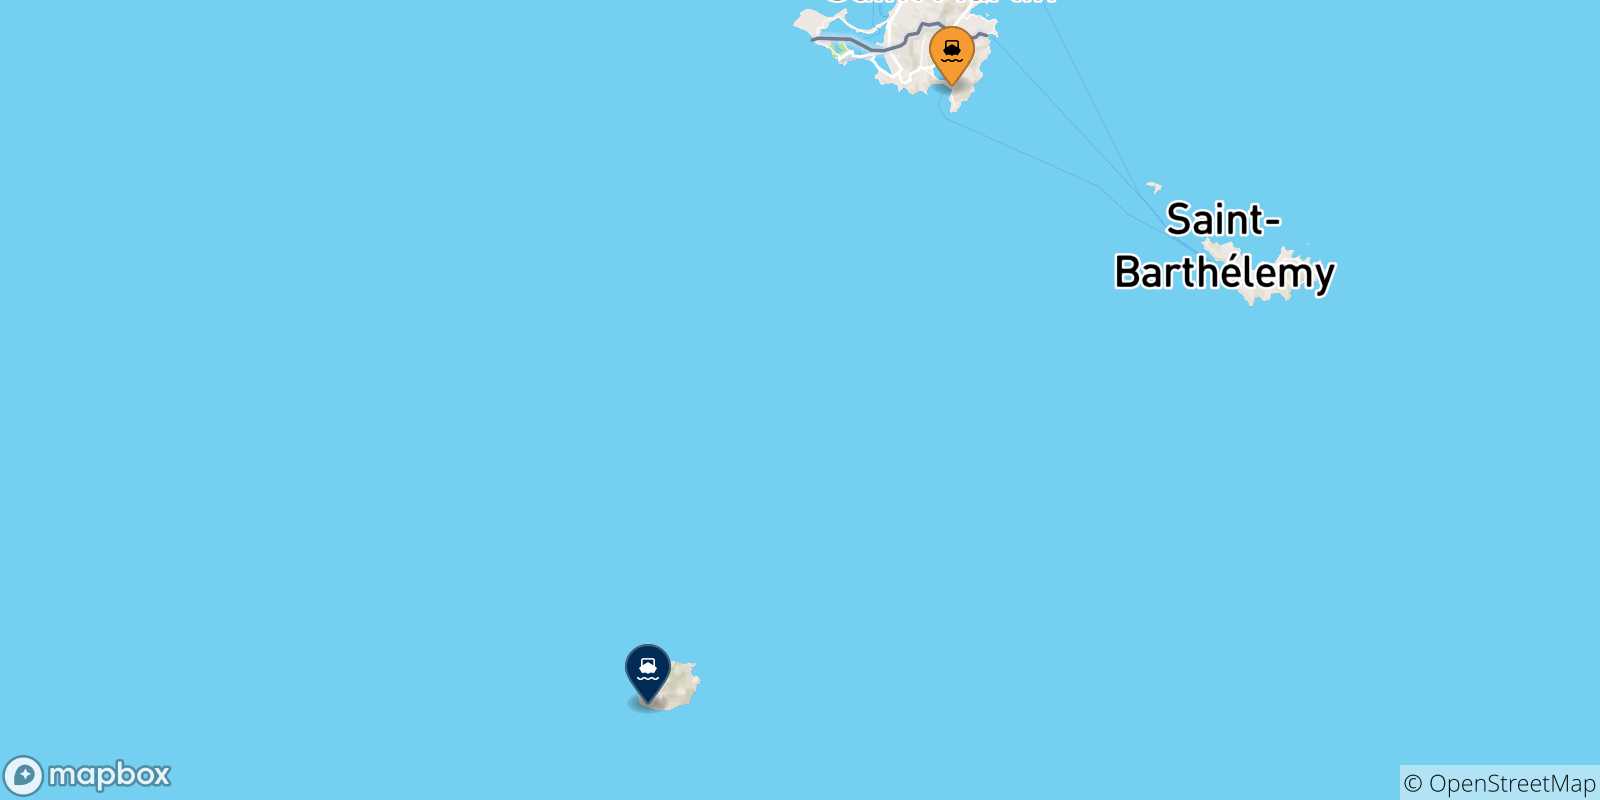 Mappa delle possibili rotte tra Philipsburg (St Maarten) e i Caraibi Olandesi